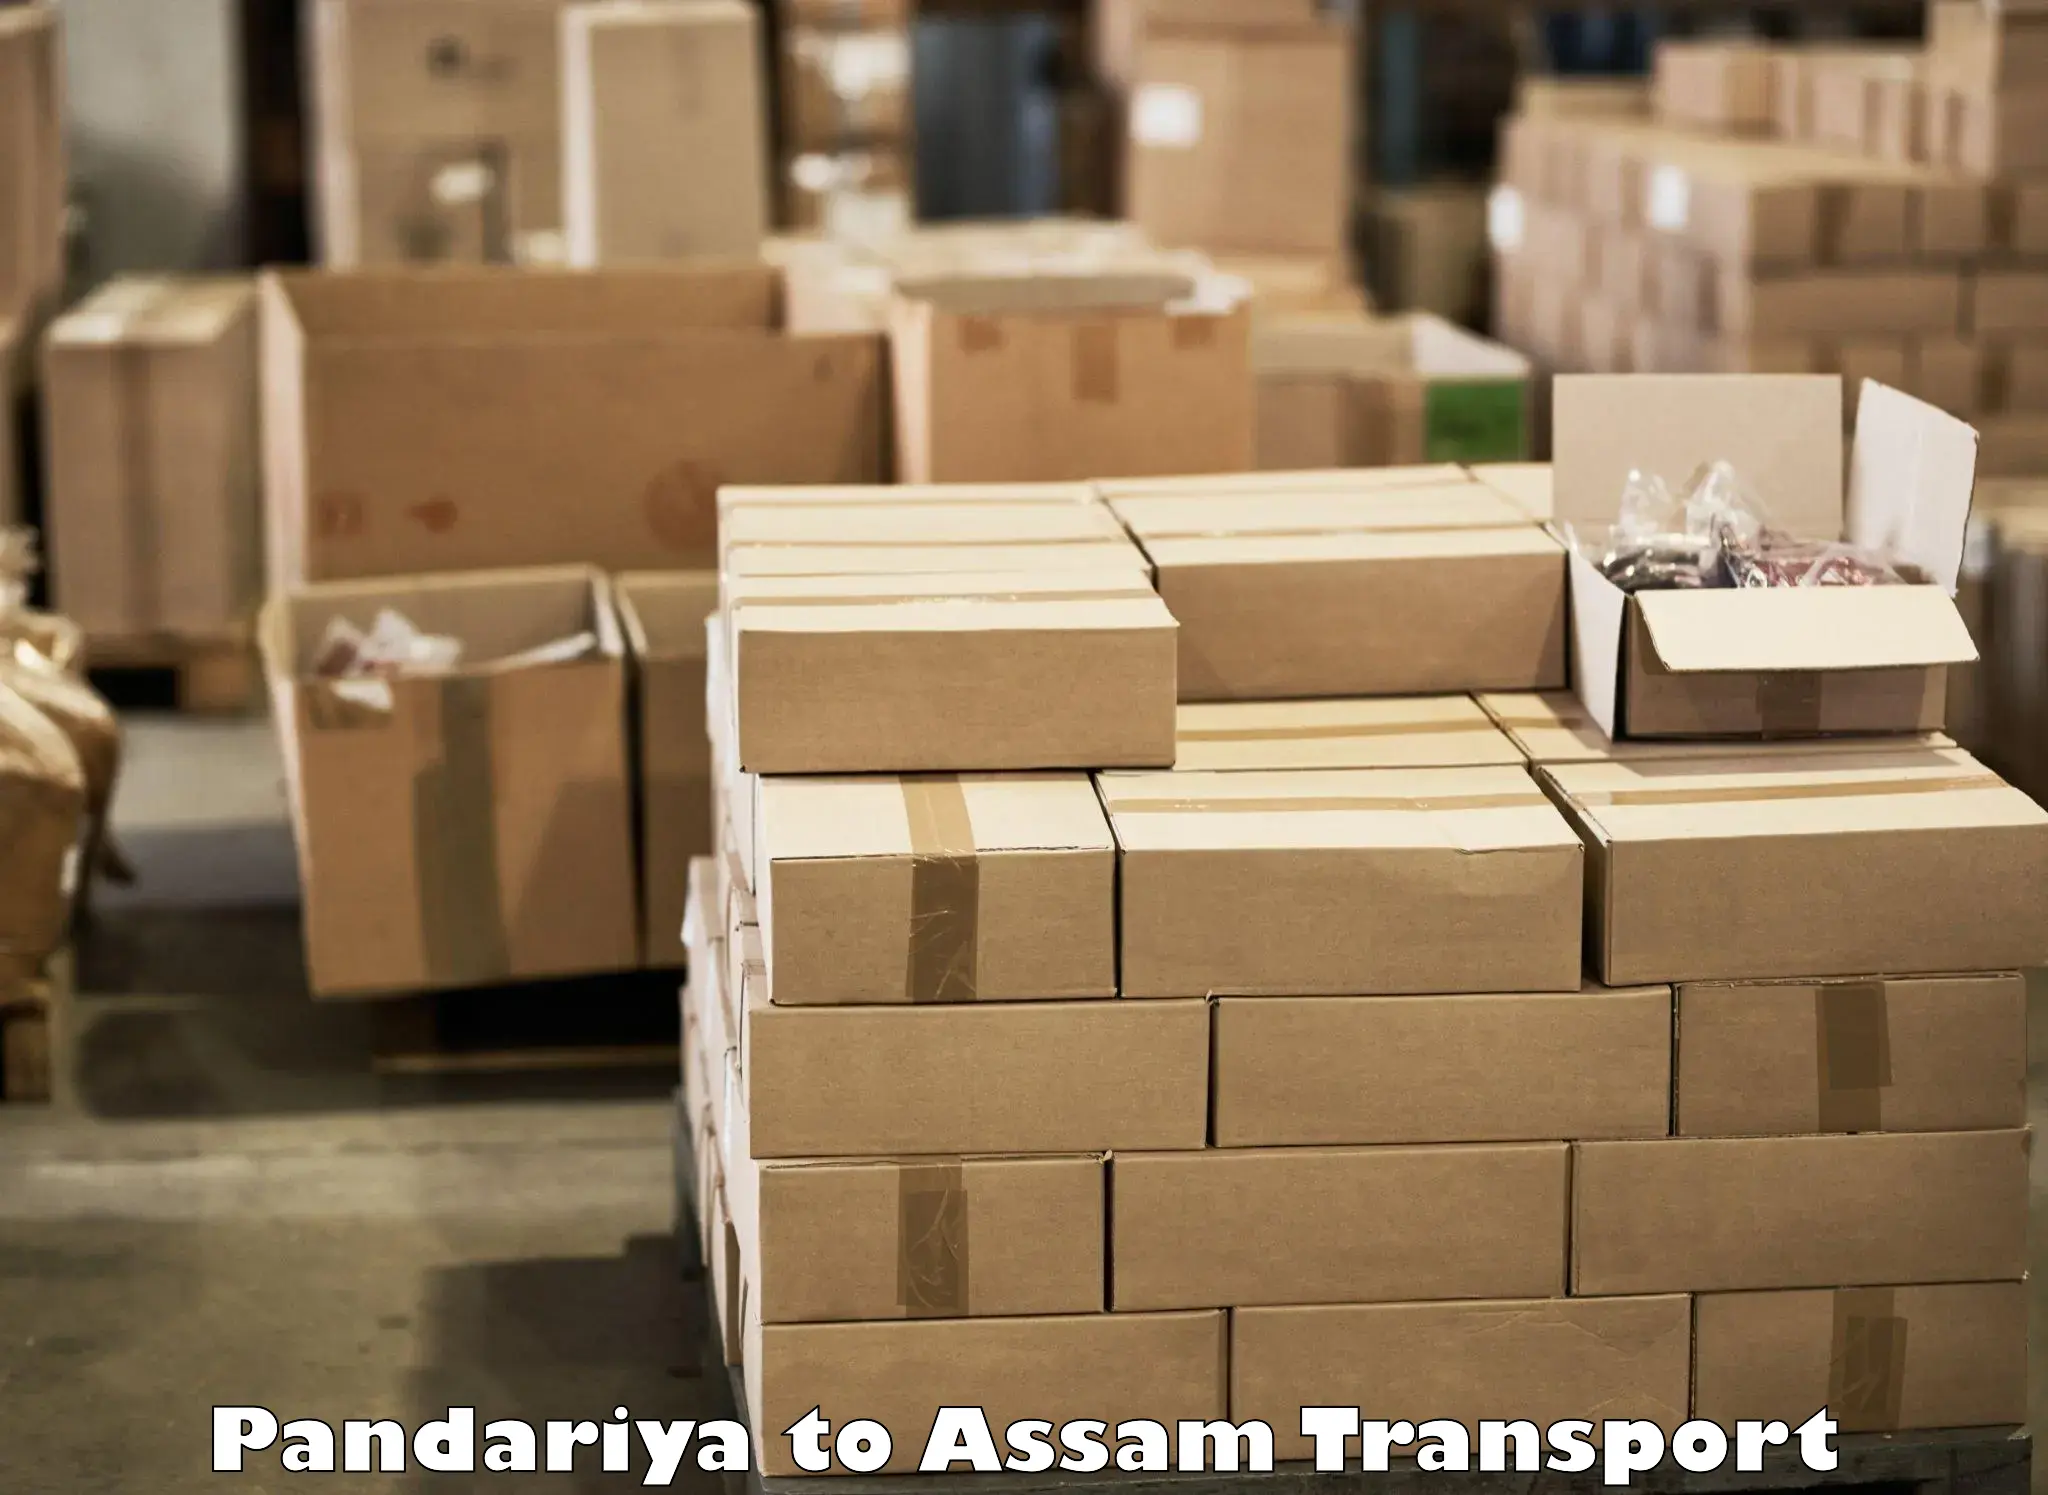 Transportation services Pandariya to Rangia